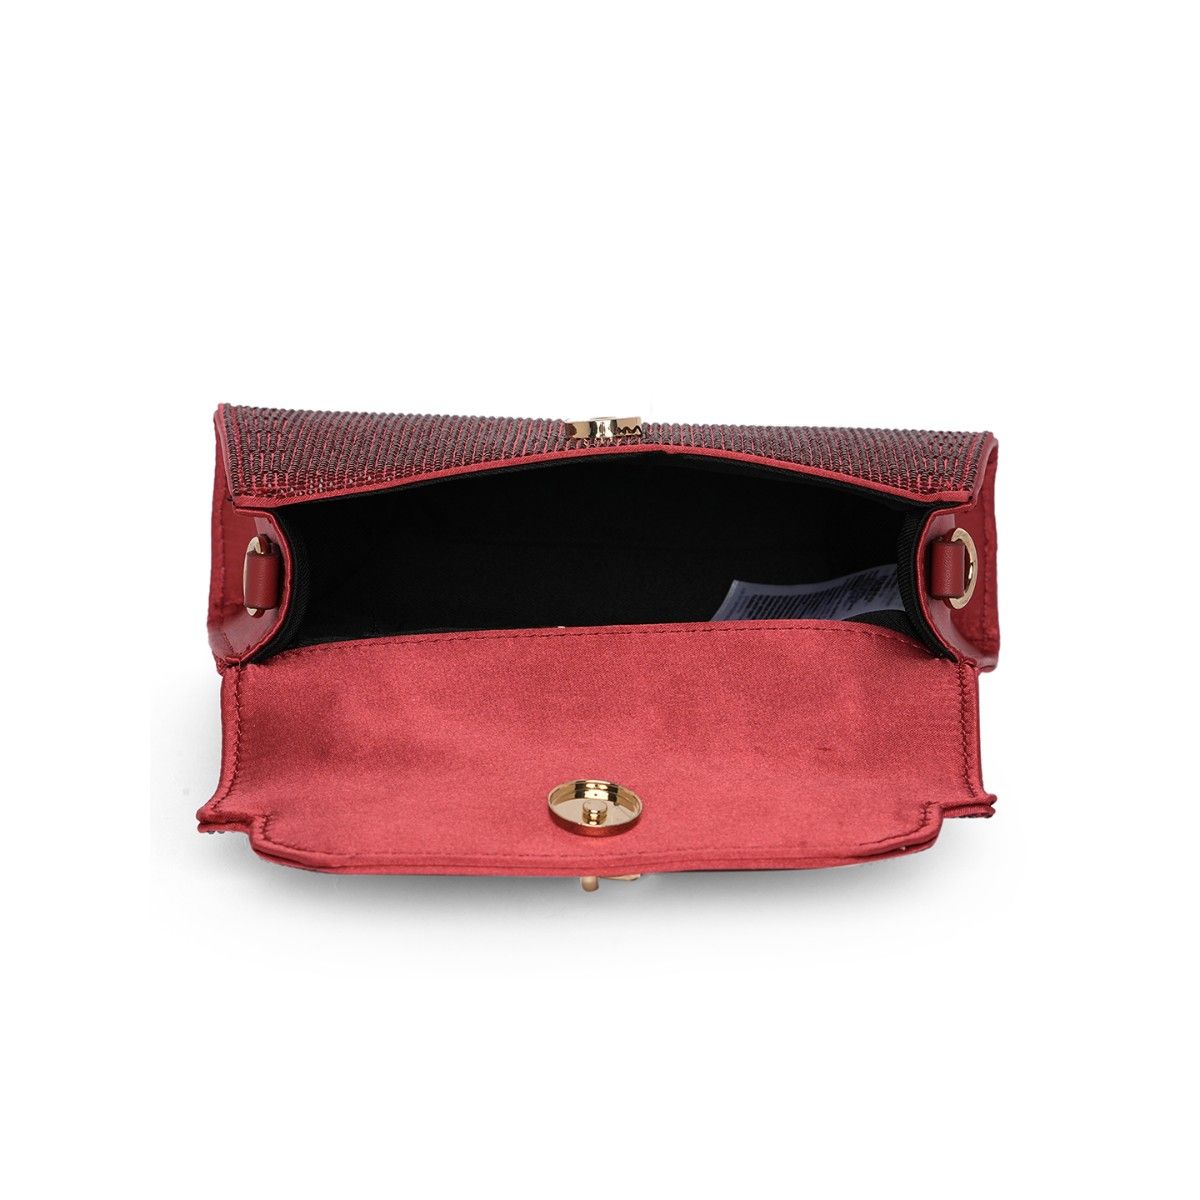 New Blue/red Aldo purse | Aldo purses, Aldo handbags, Purses